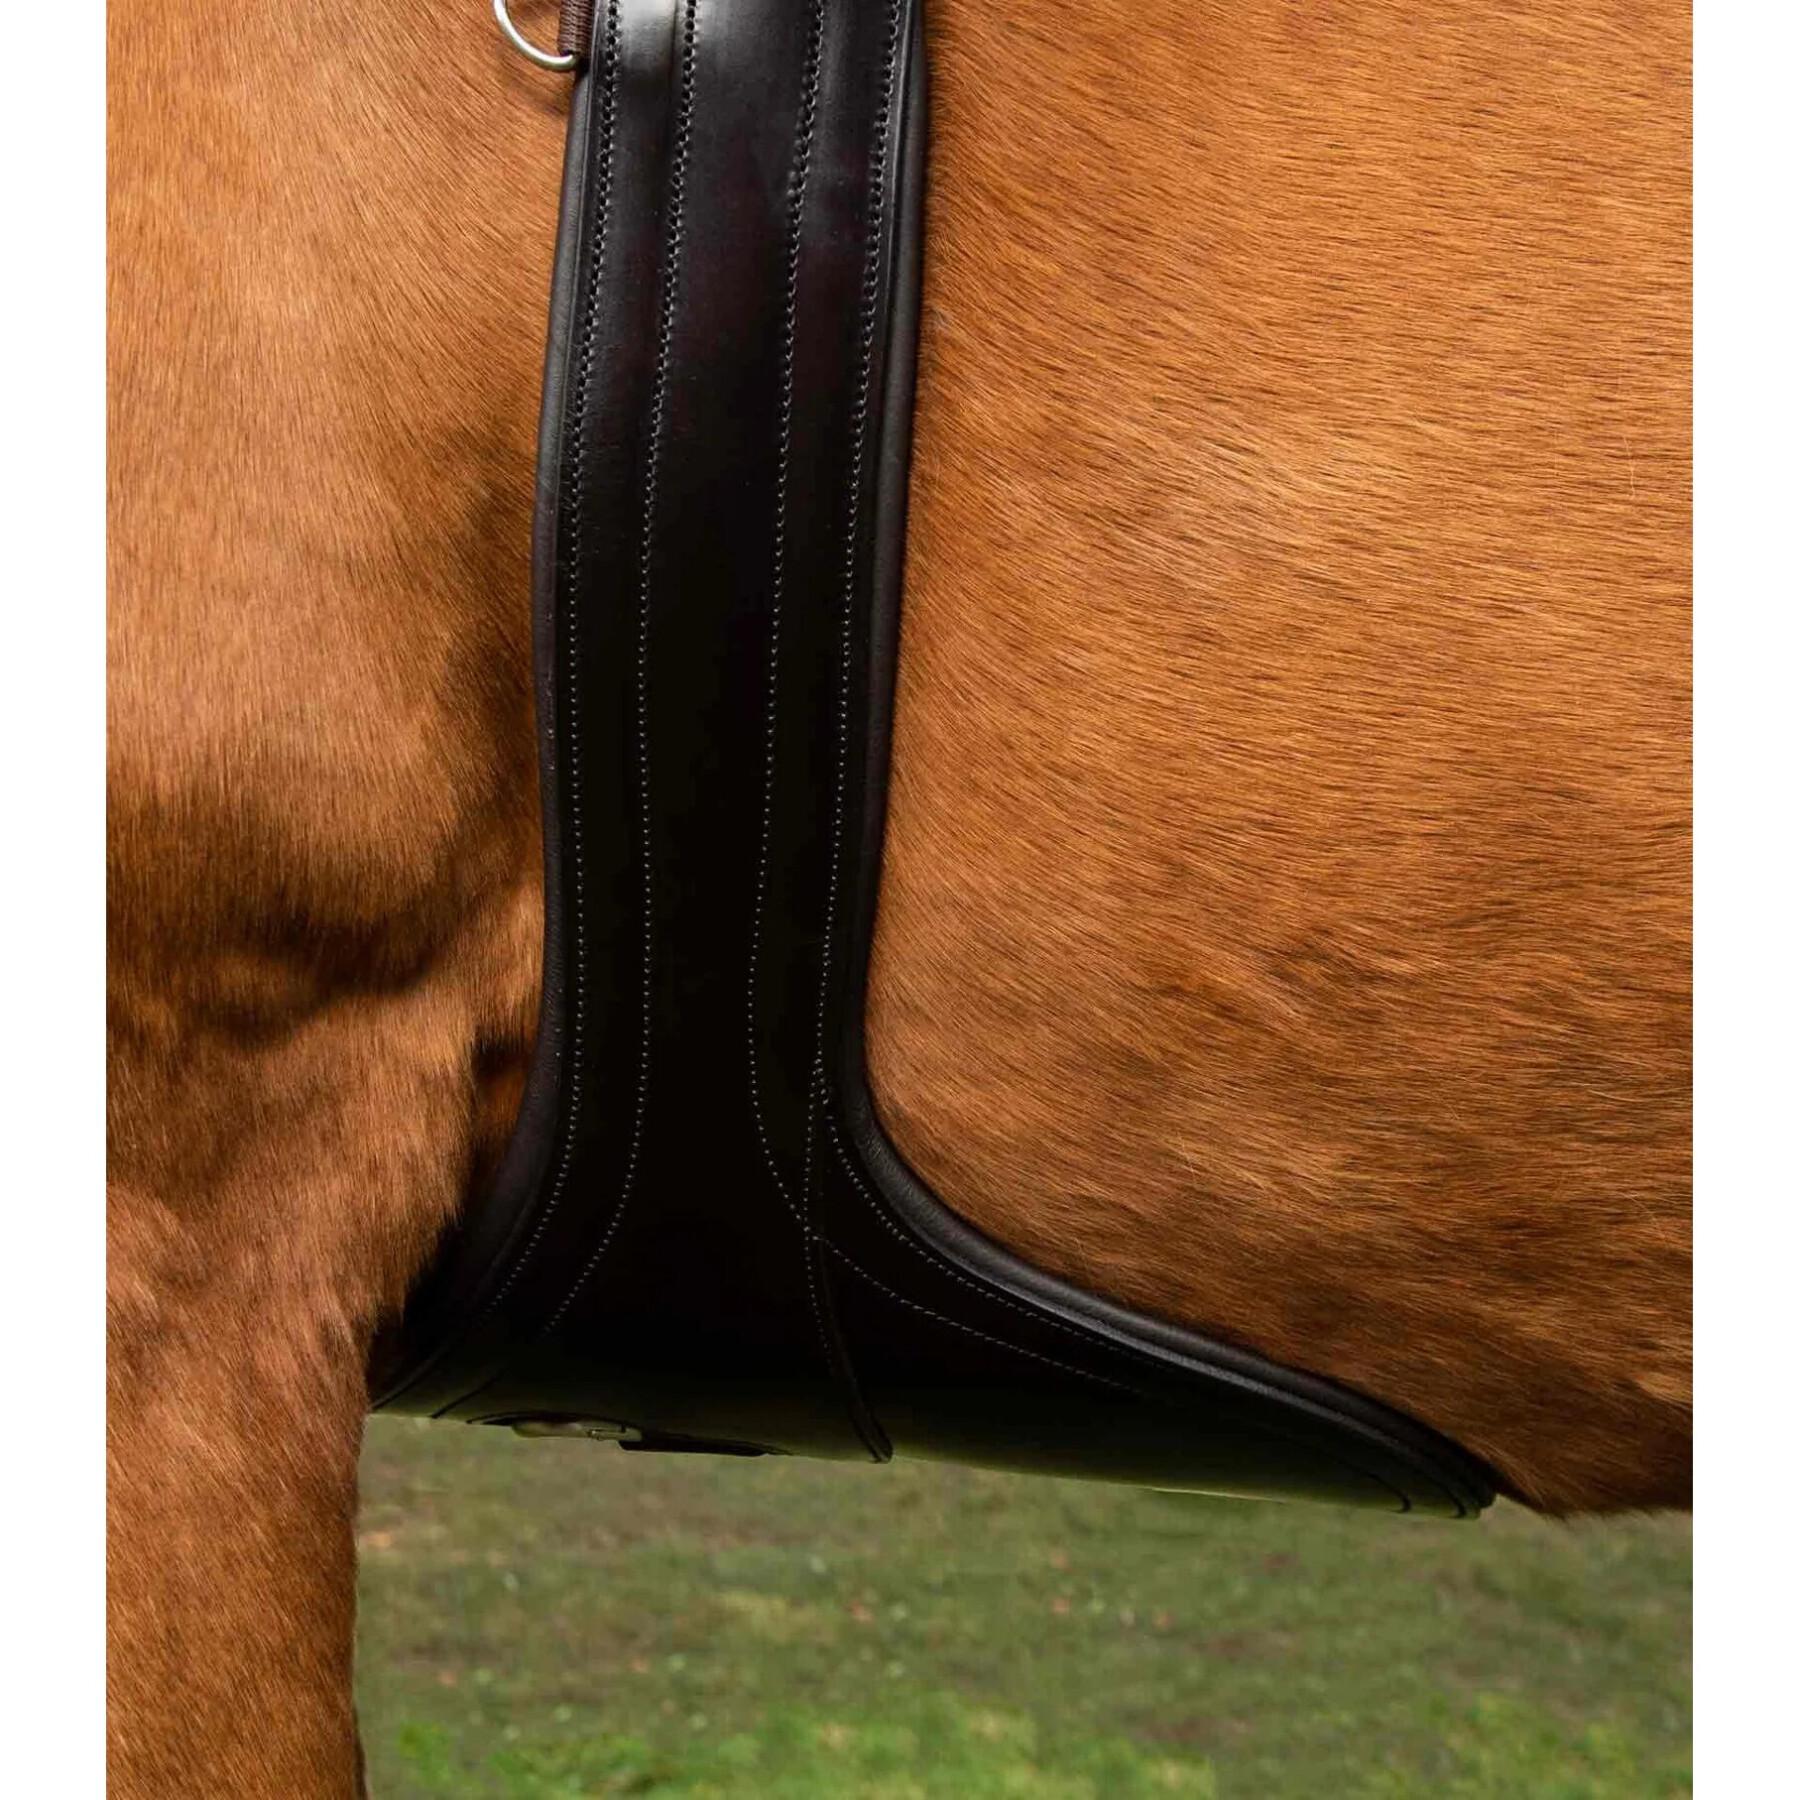 Sangle bavette équitation anatomique en cuir Premier Equine Lizzano